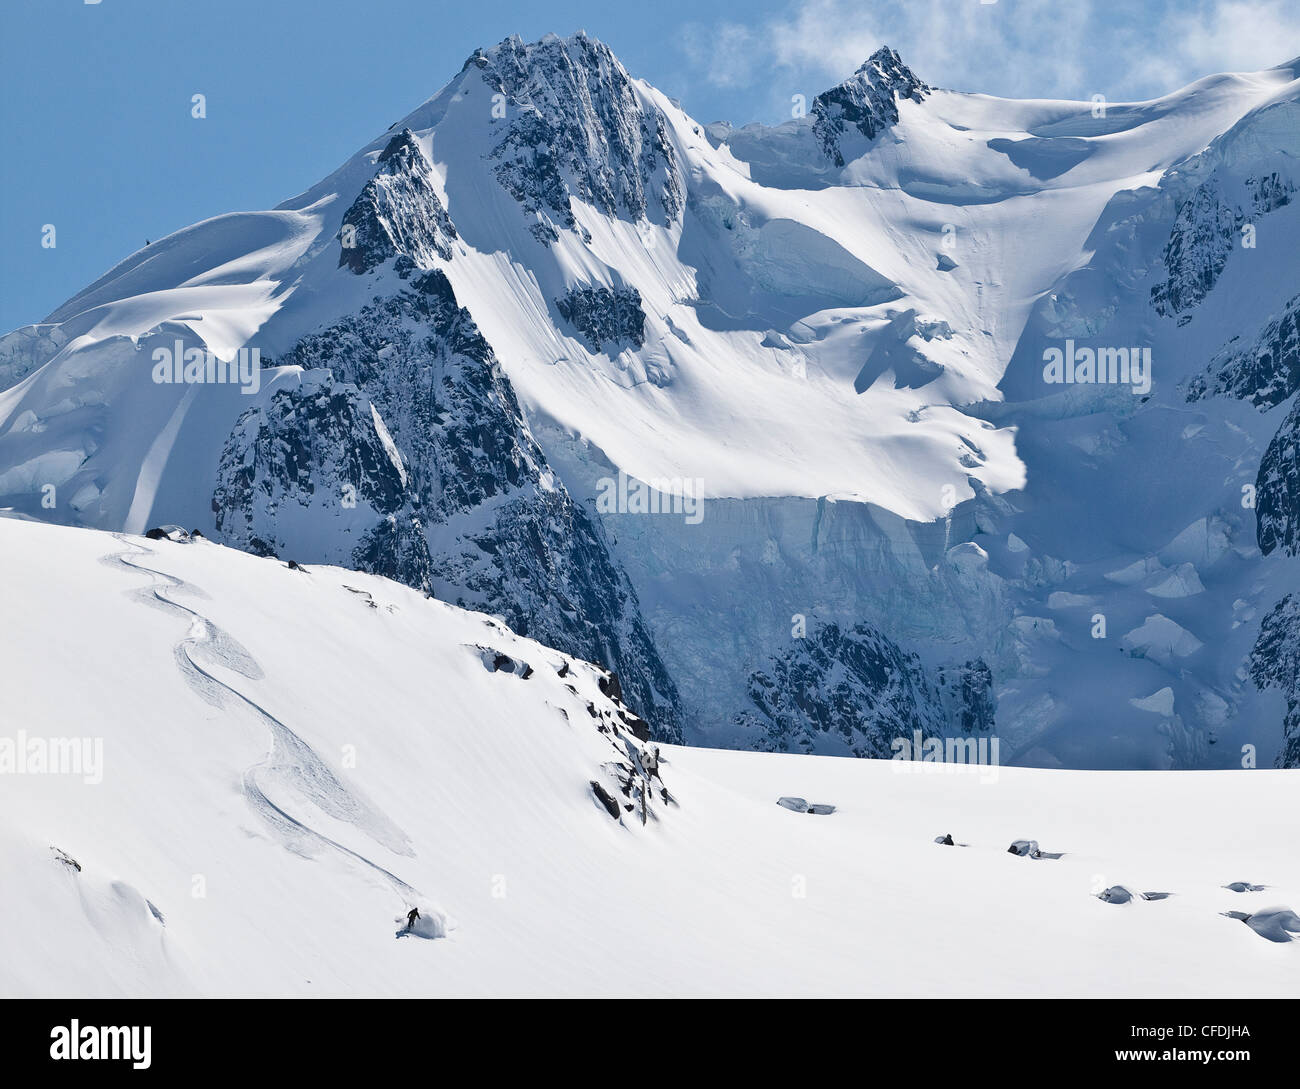 La skieuse de l'arrière-pays du ski de poudreuse dans la chaîne Selkirk près de la hutte de l'arrière-pays de fées Meadows, en Colombie-Britannique, Canada. Banque D'Images